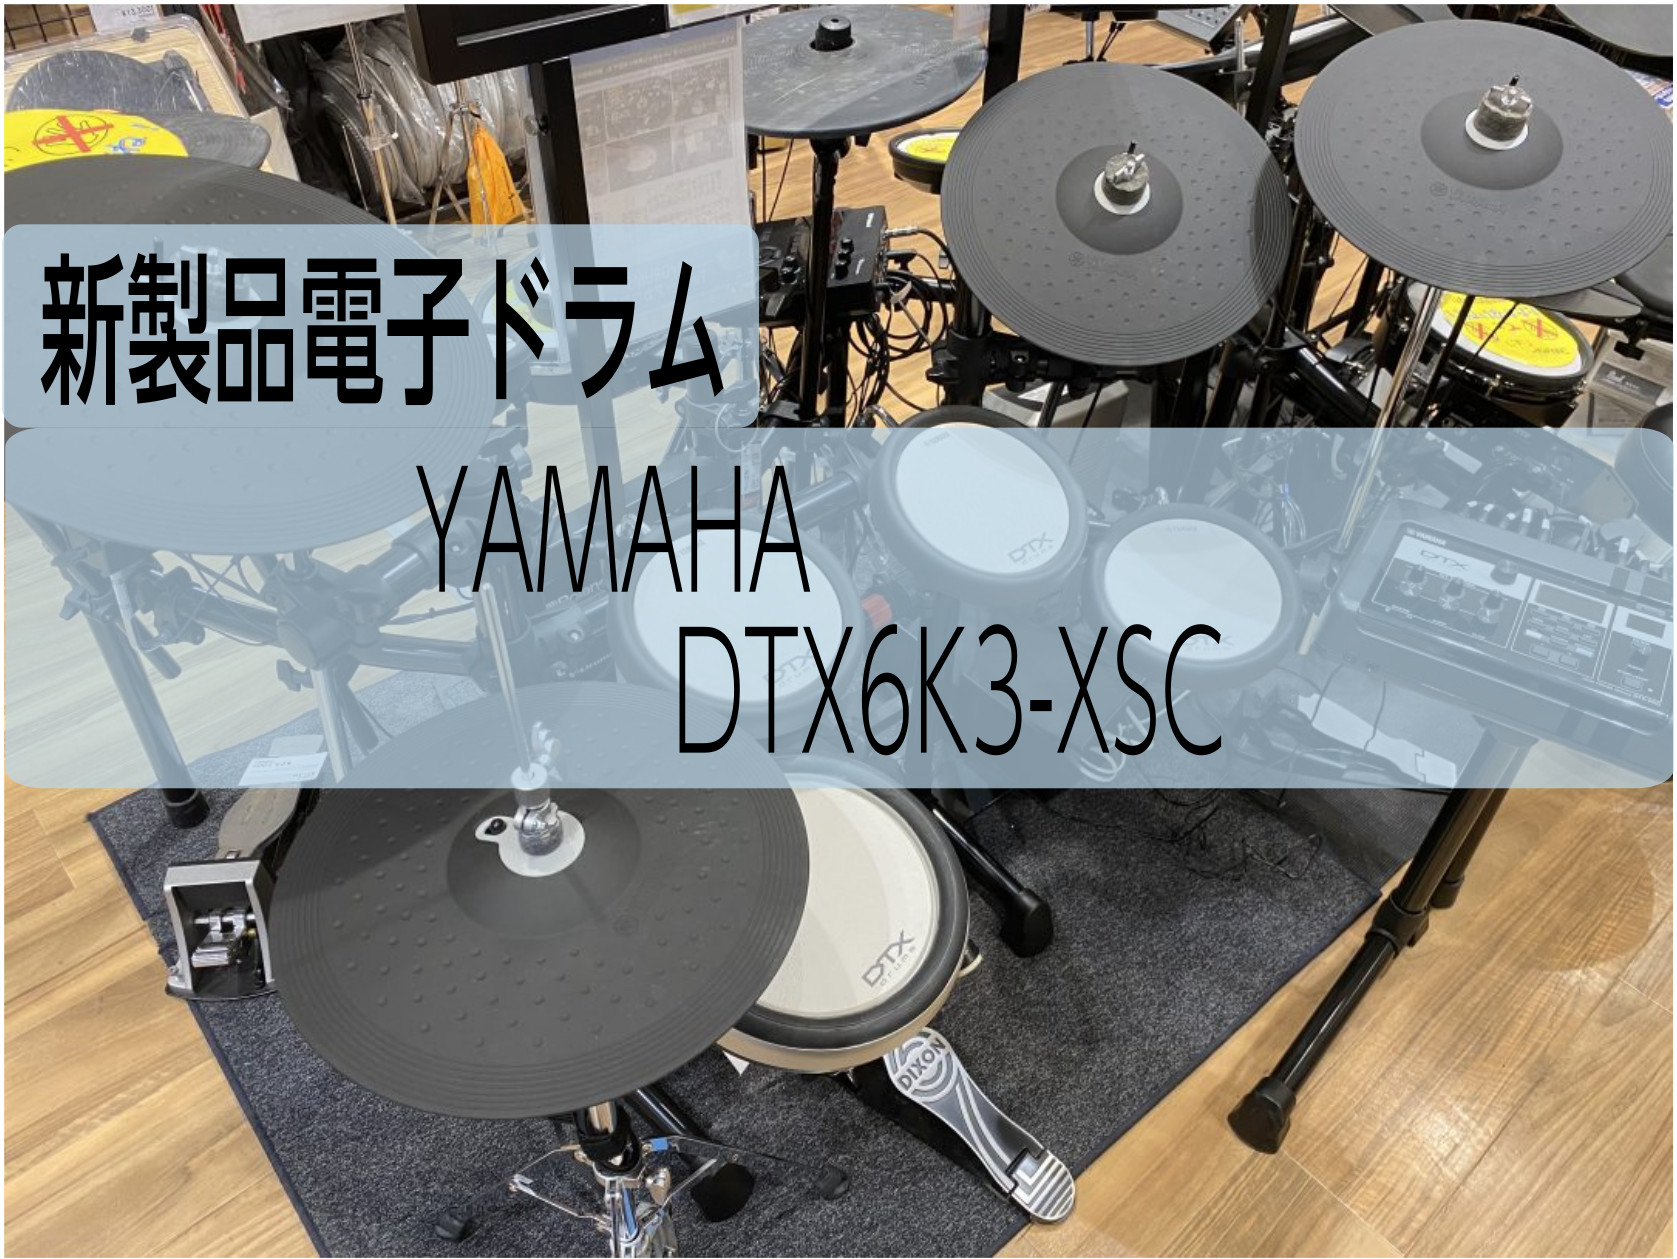 新製品電子ドラム】YAMAHA DTX6K3-XSC展示しております！｜島村楽器 